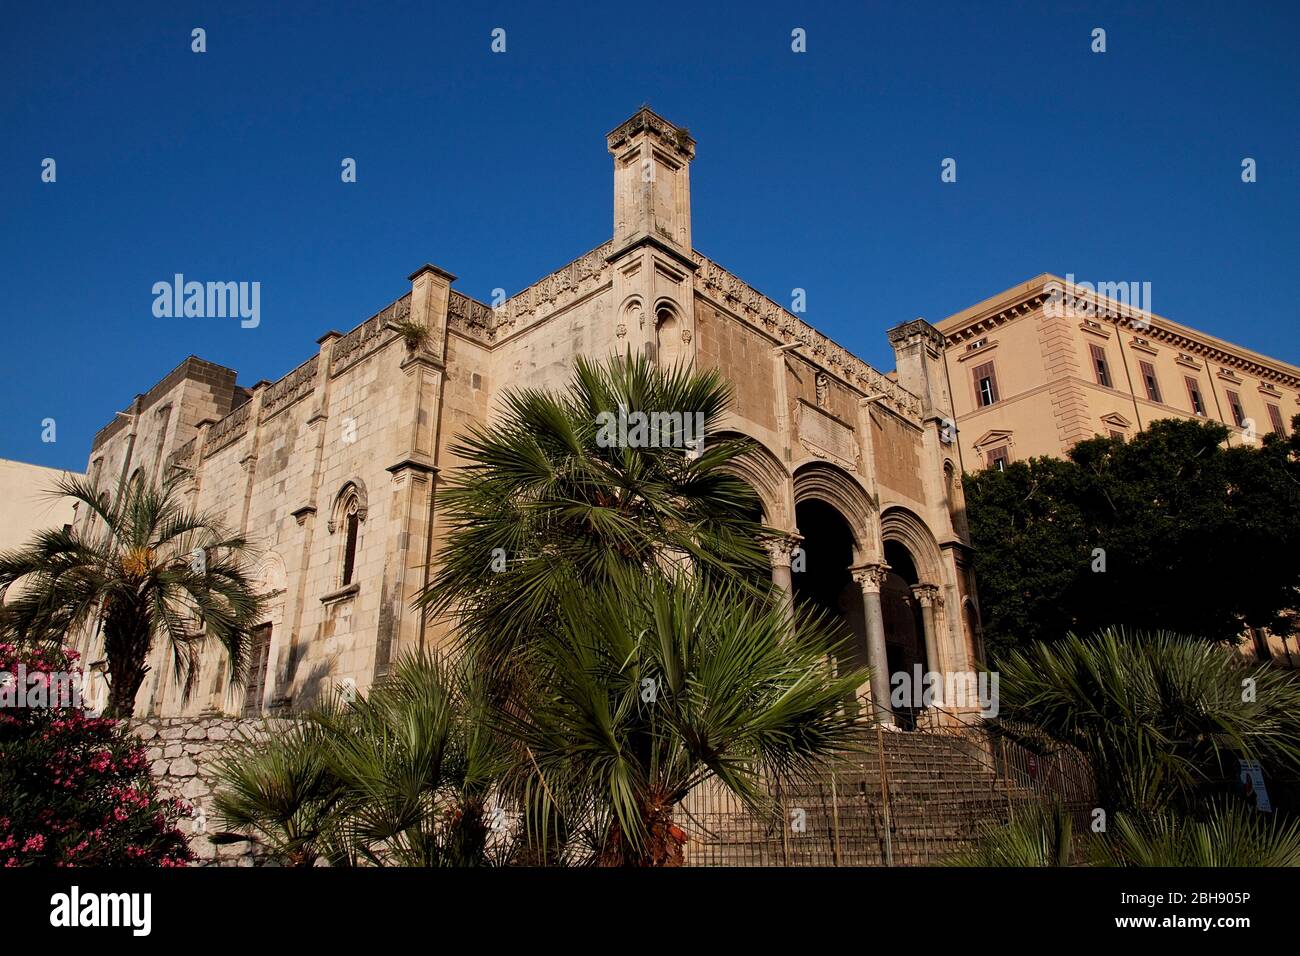 Palermo, centro storico, chiesa di Santa Maria della catena, XVI secolo, tardo gotico catalano, vista esterna del portico con tre portici Foto Stock